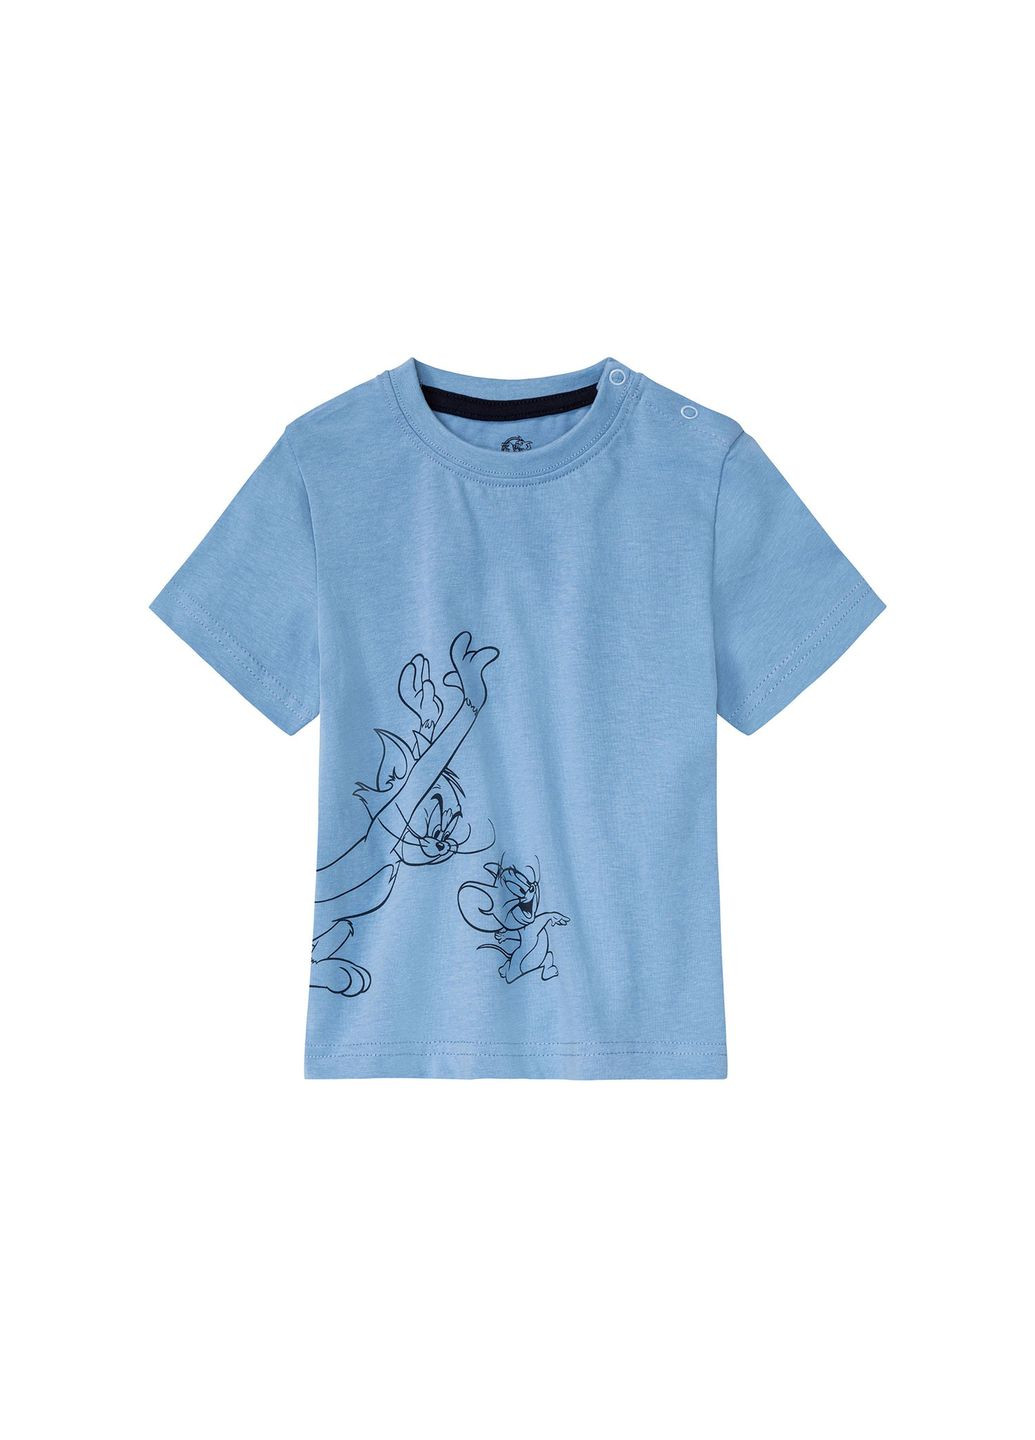 Комбинированная всесезон пижама летняя для мальчика футболка + шорты Lupilu